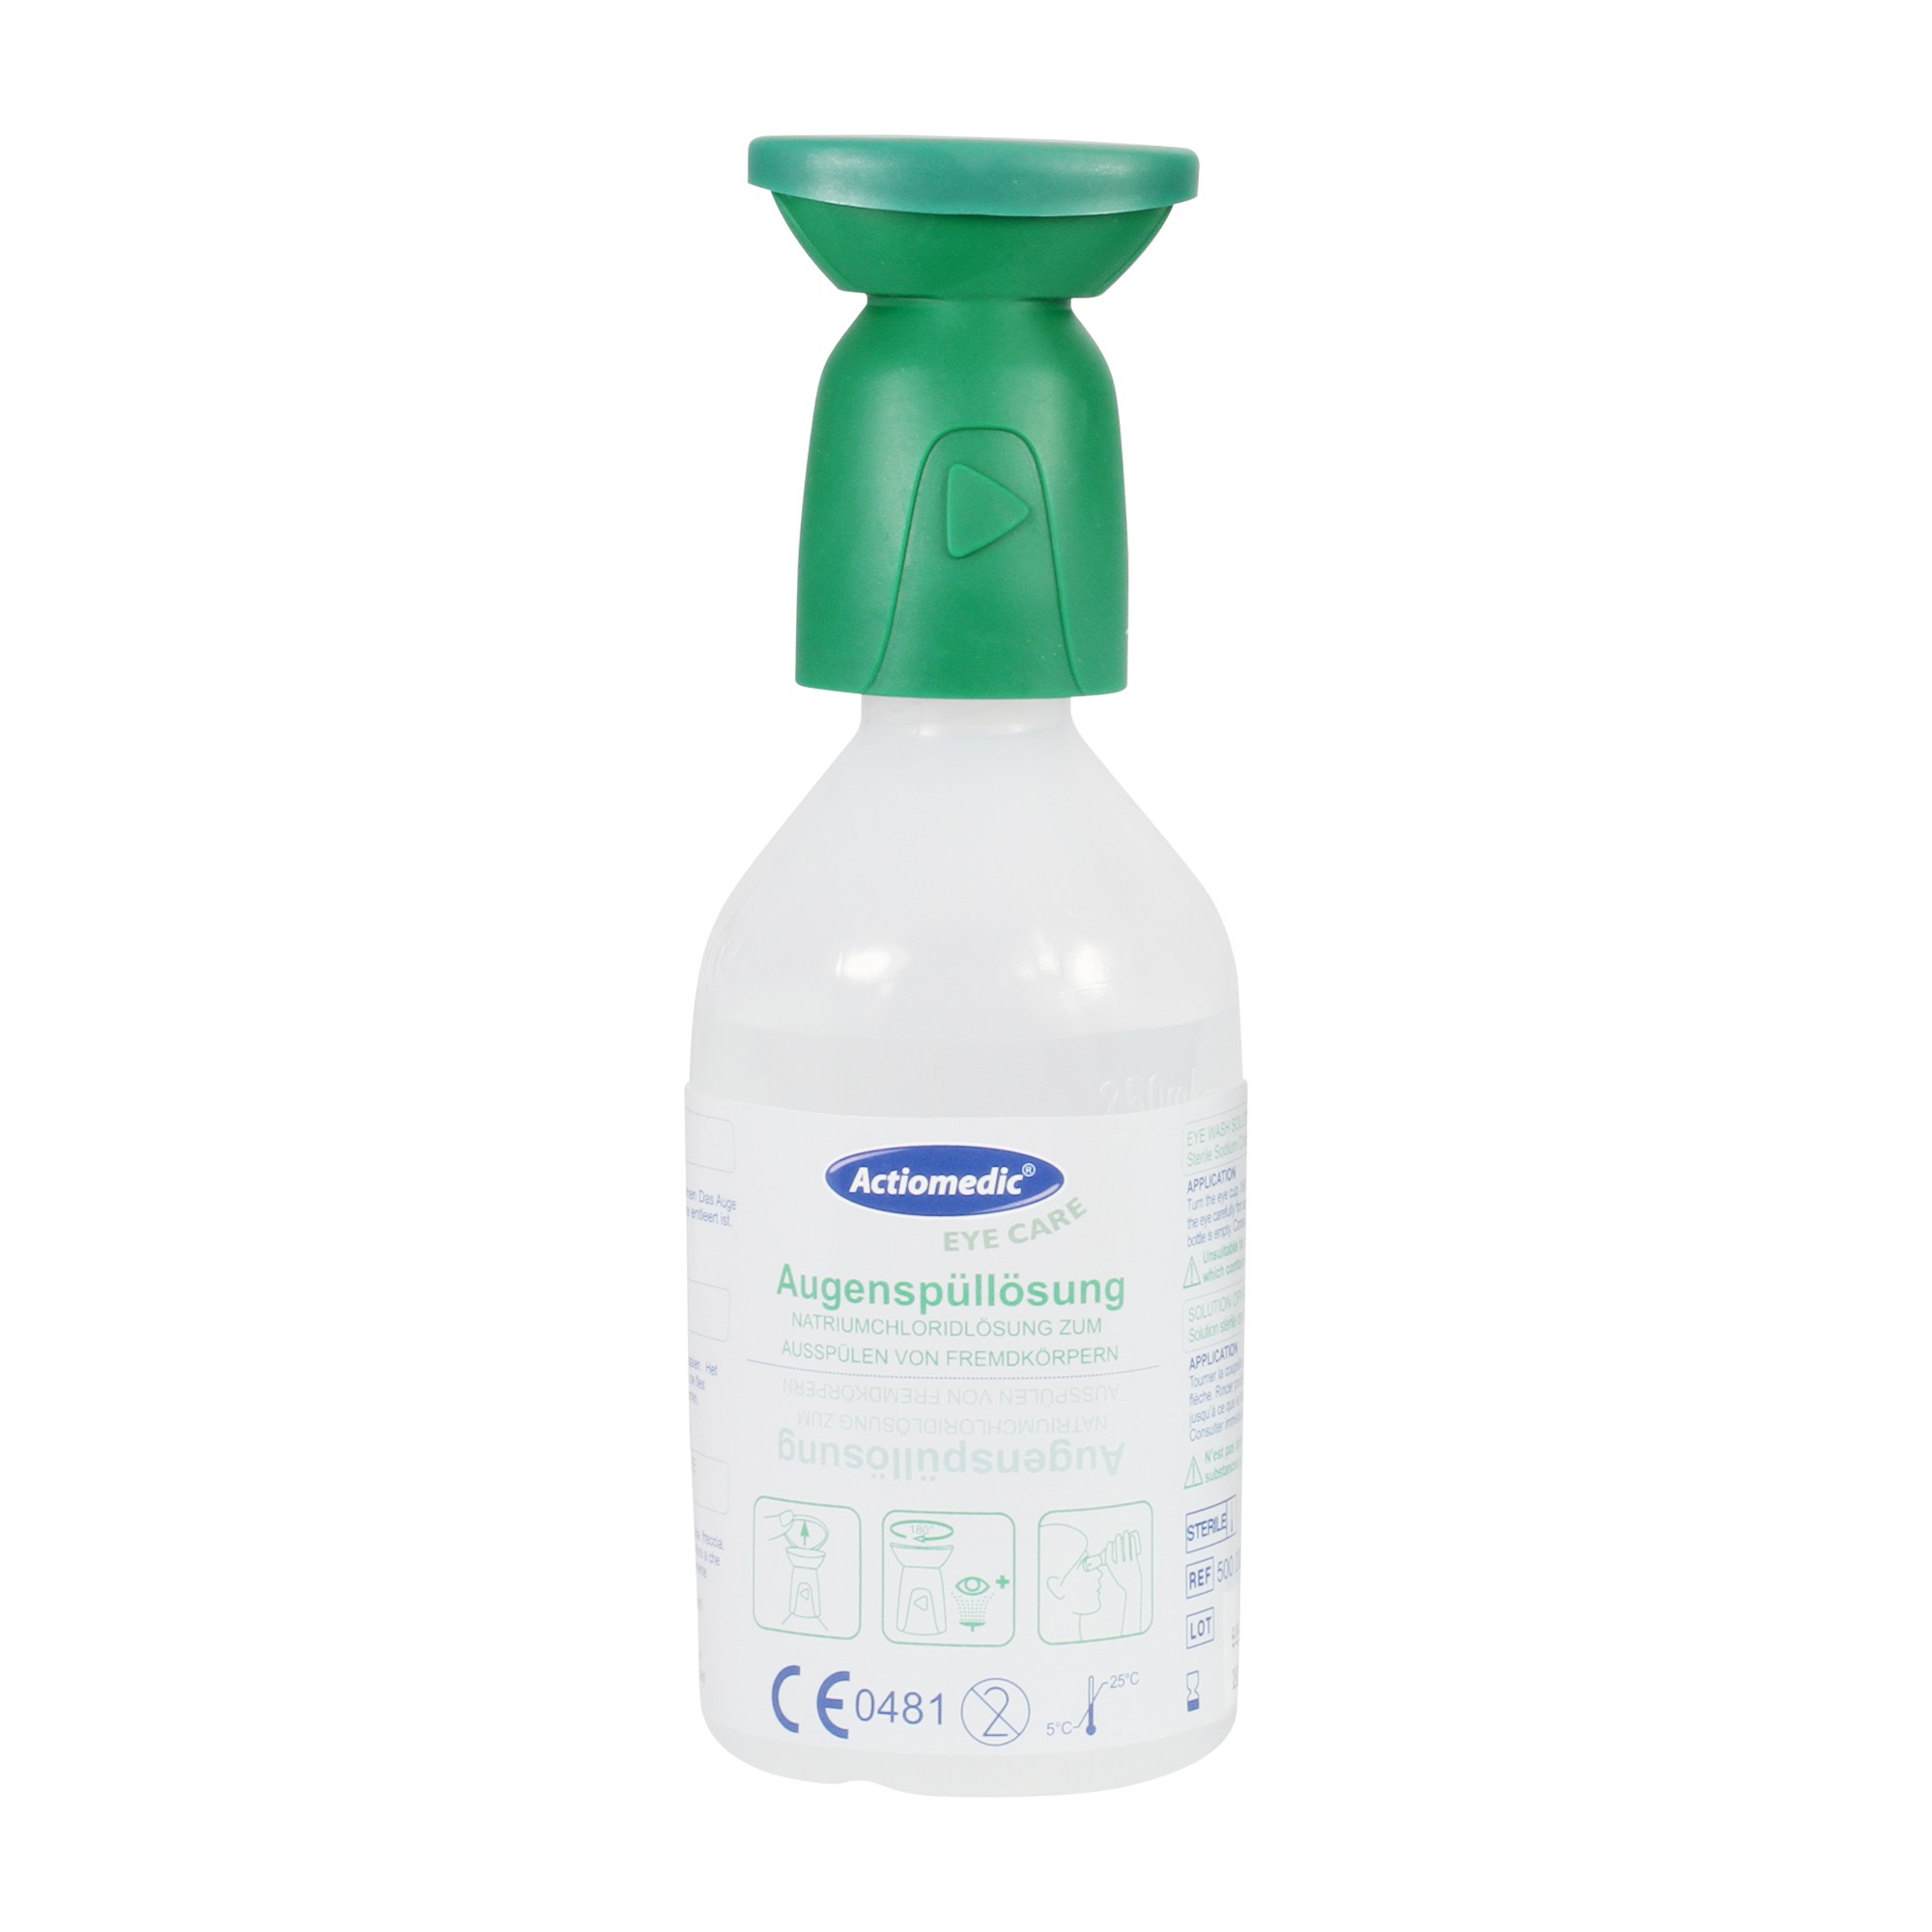 Actiomedic EYE CARE Augenspülflasche mit Natriumchloridlösung 0,9 %